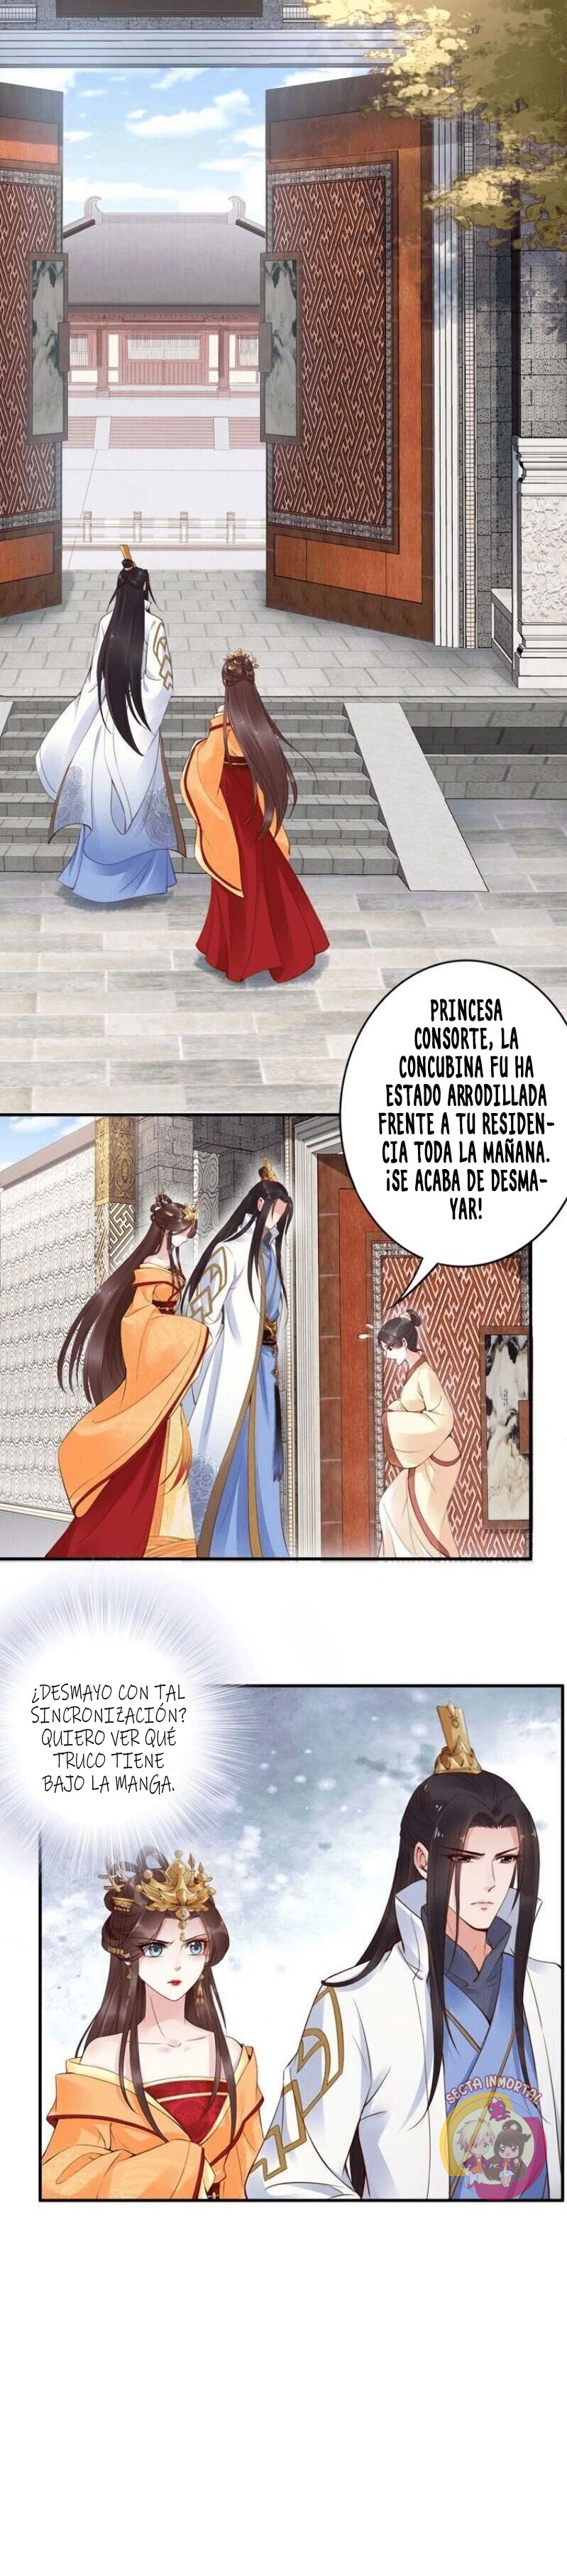 Manga Fenix volando desde el Palacio del Este Chapter 5 image number 17